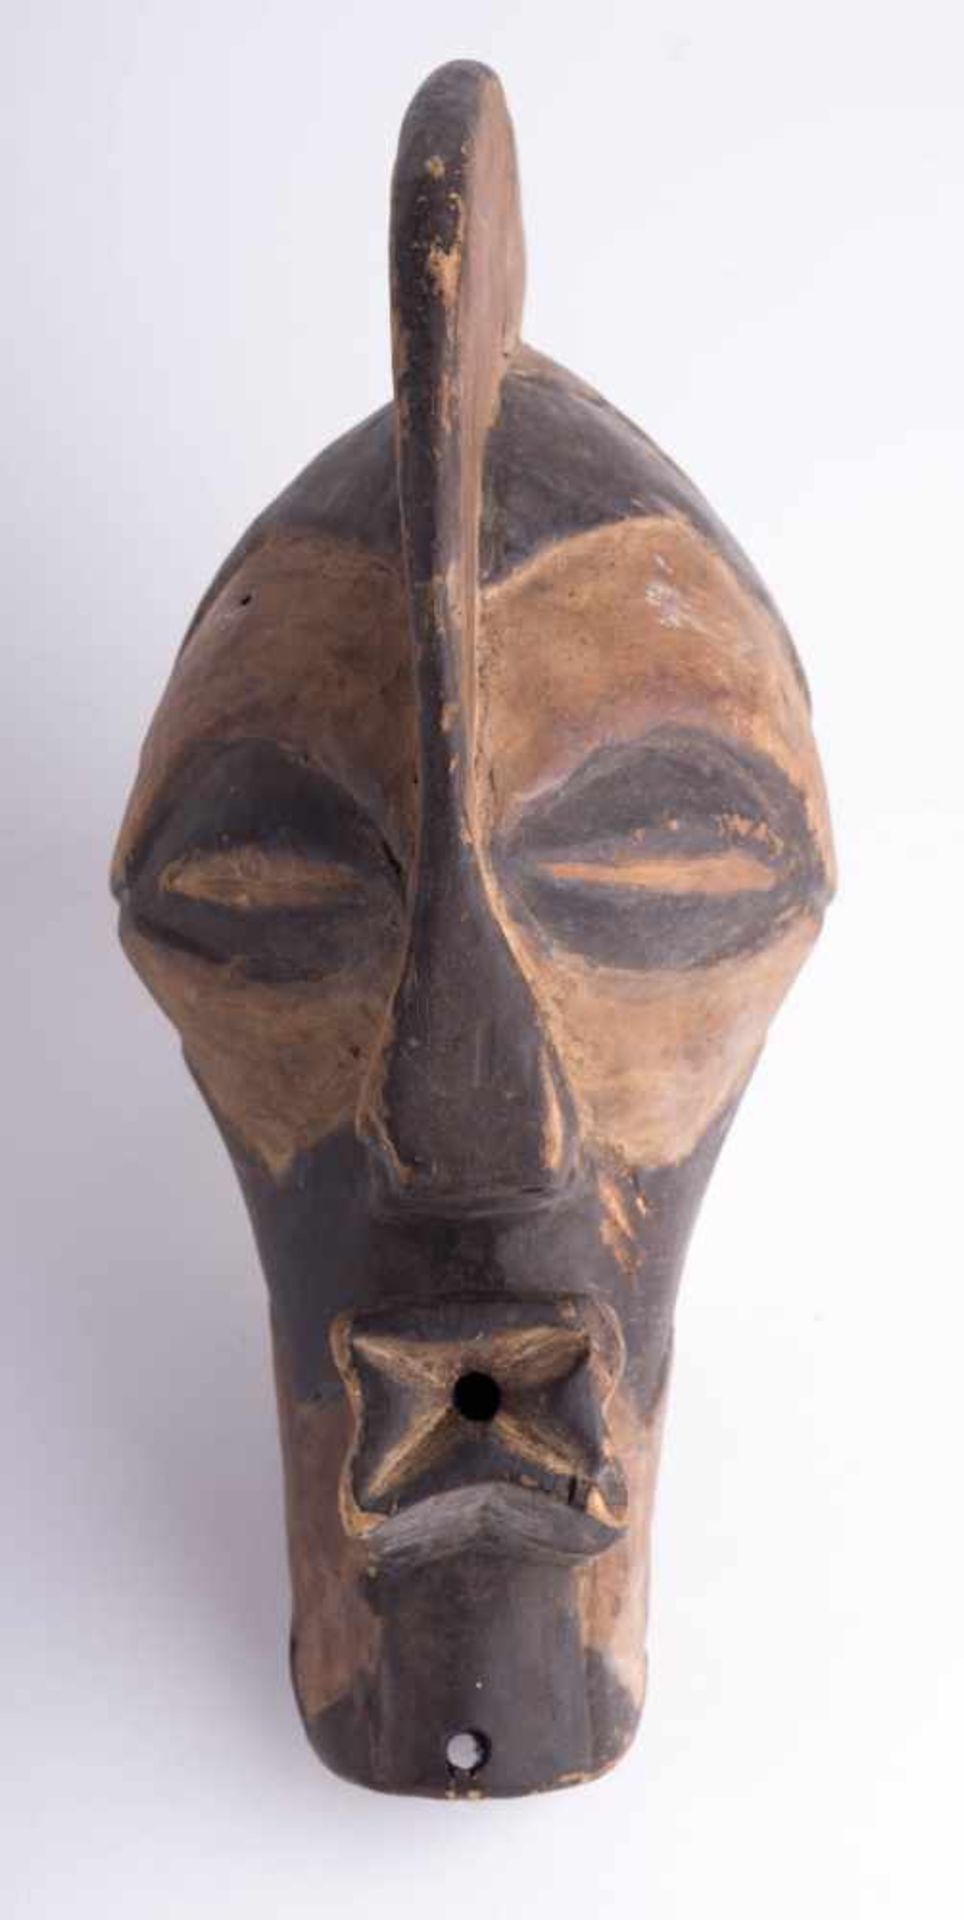 Songe Mask Rep. Zaire Holz, ca. 26 cm x 11 cm x 12,5 cm Provenienz: Alte Diplomaten-Sammlung wood,